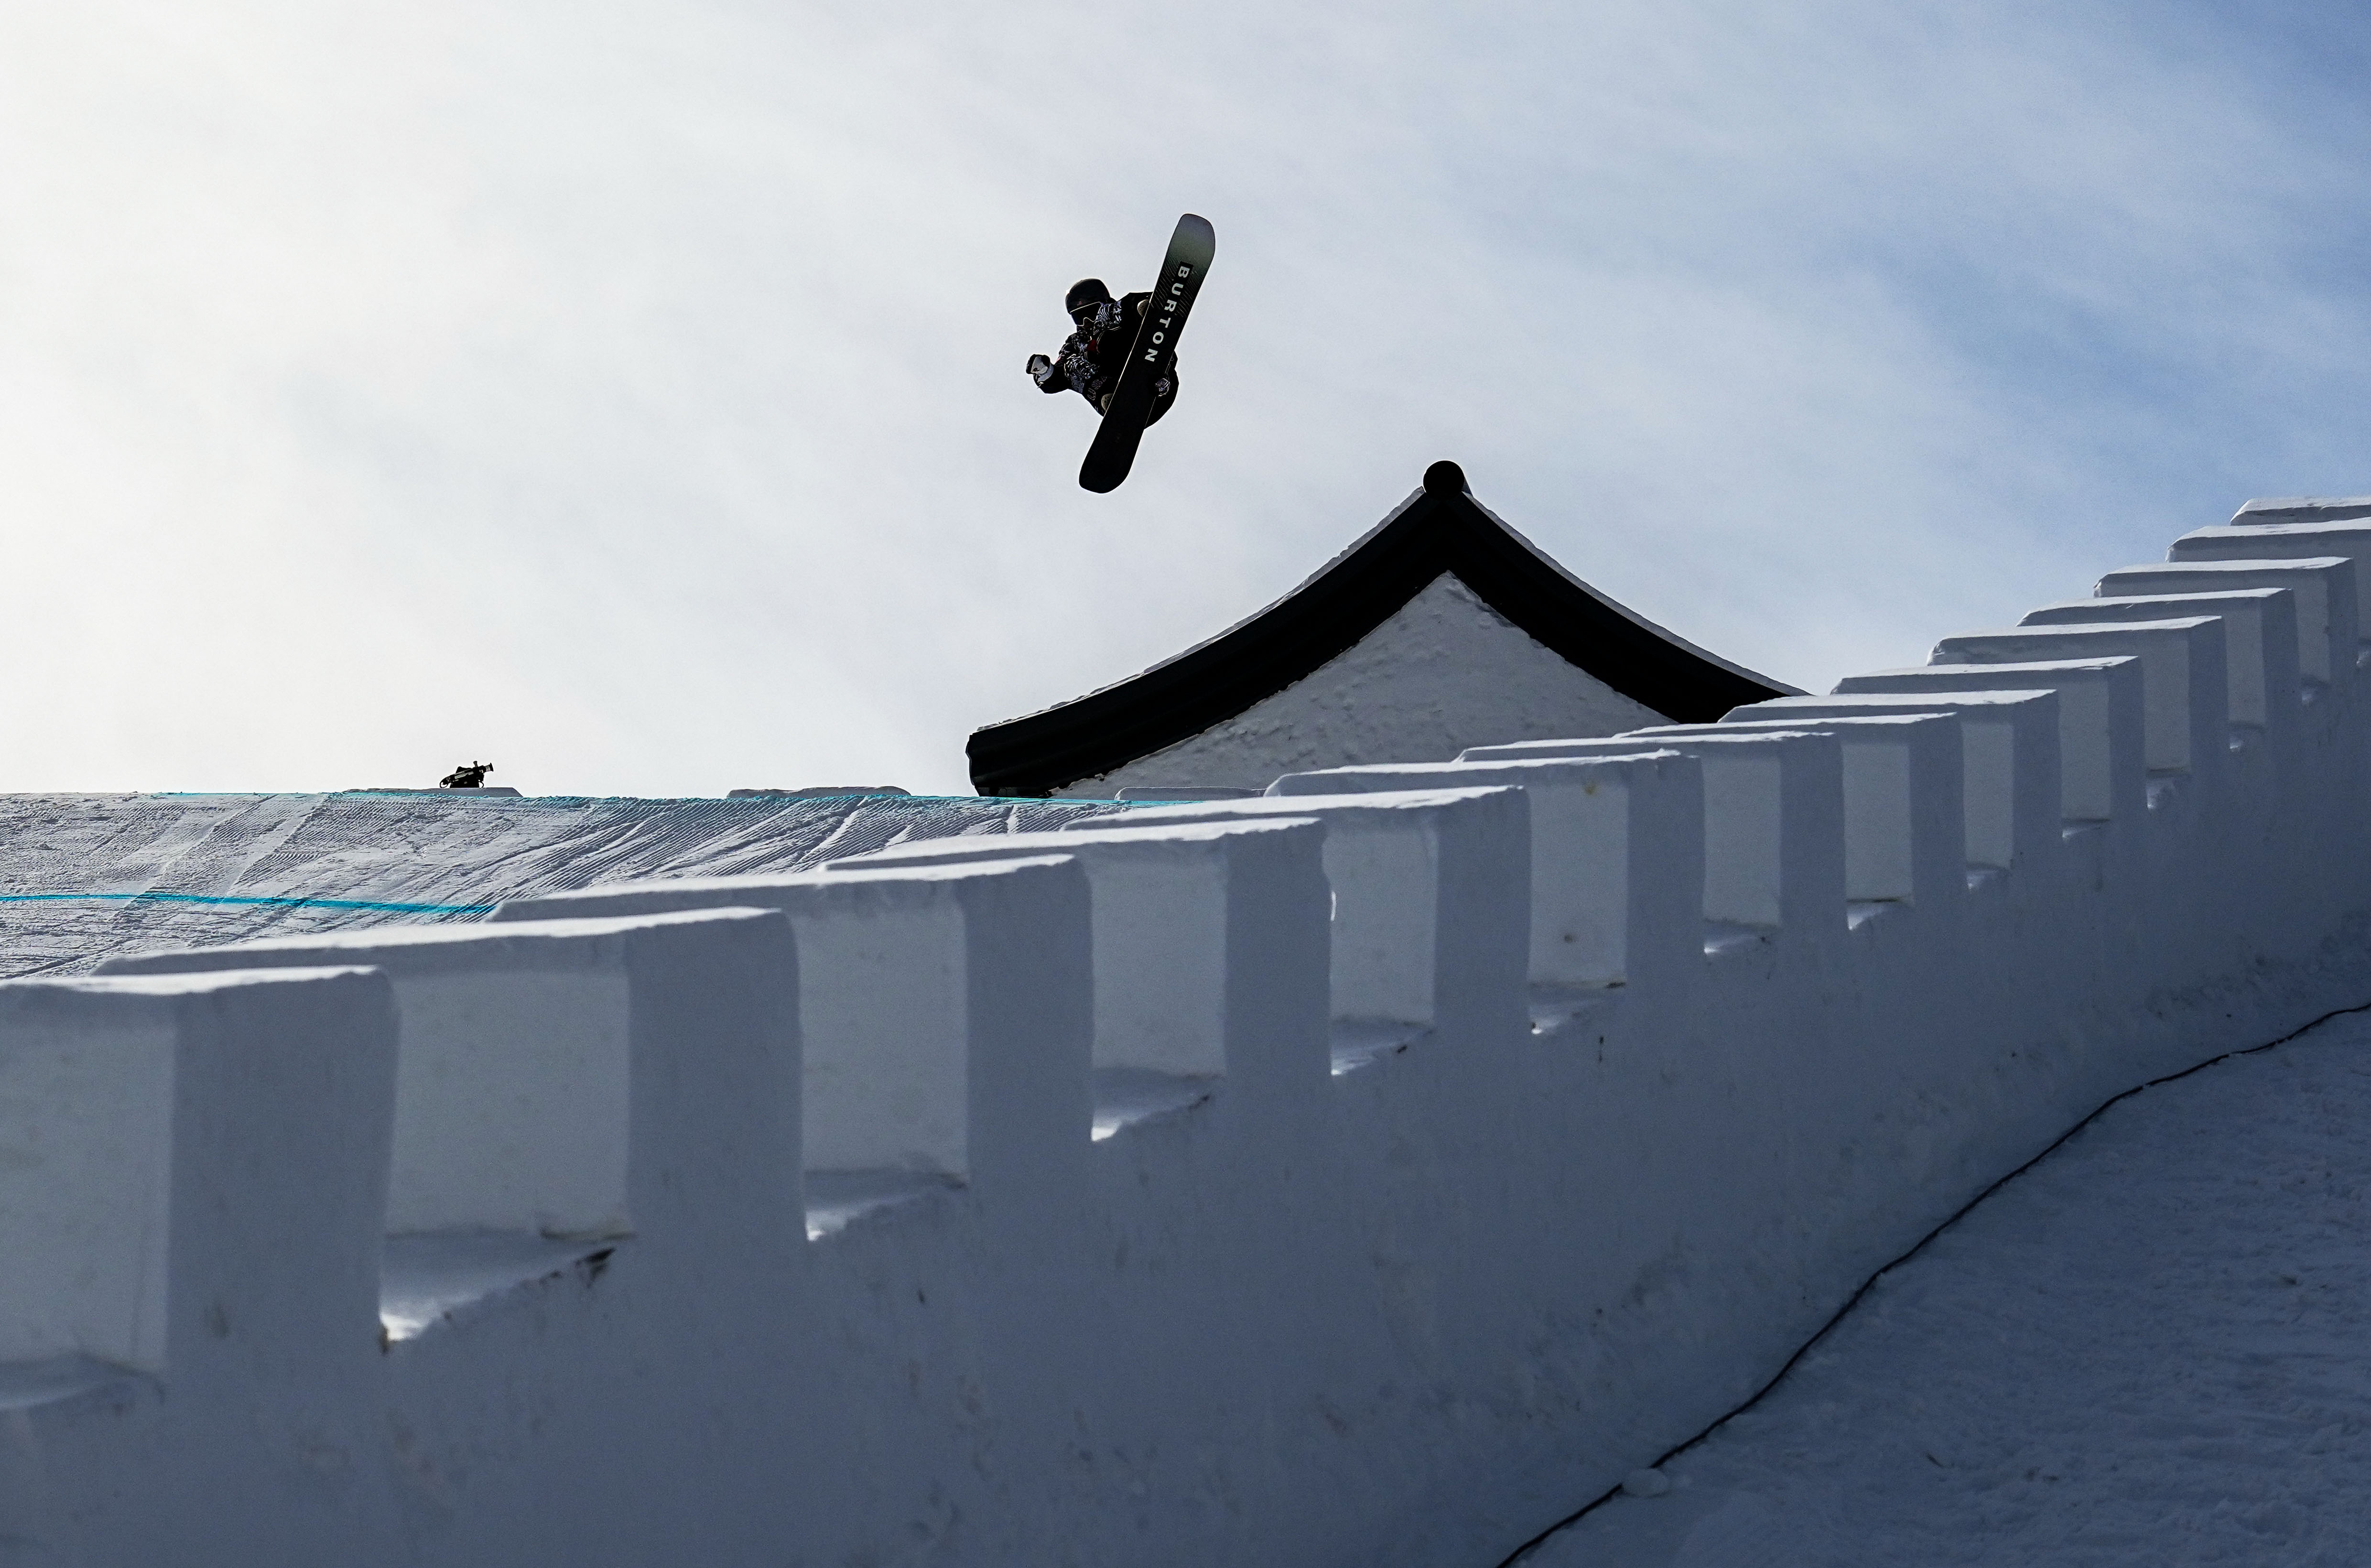 北京冬奥会 |“雪长城”上飞檐走壁，单板滑手体验“中国风”